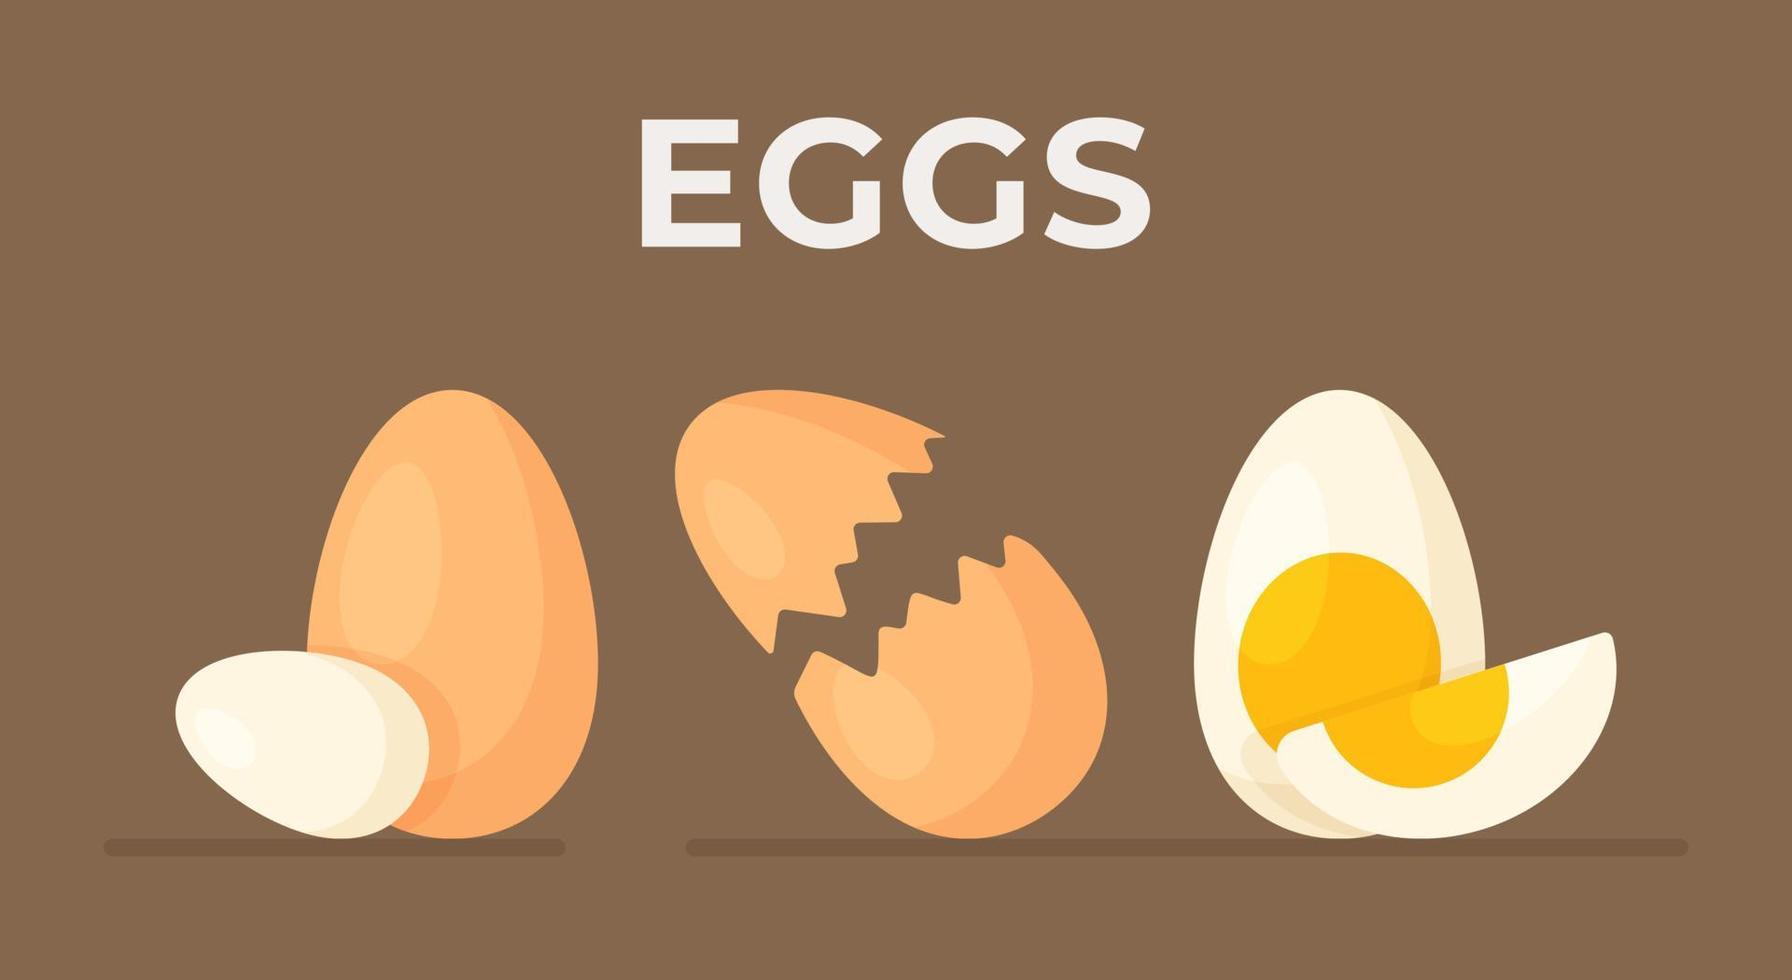 pancarta de huevos crudos sobre un fondo marrón. se aíslan los huevos enteros, rotos y cocidos. haciendo el desayuno. útil. vector